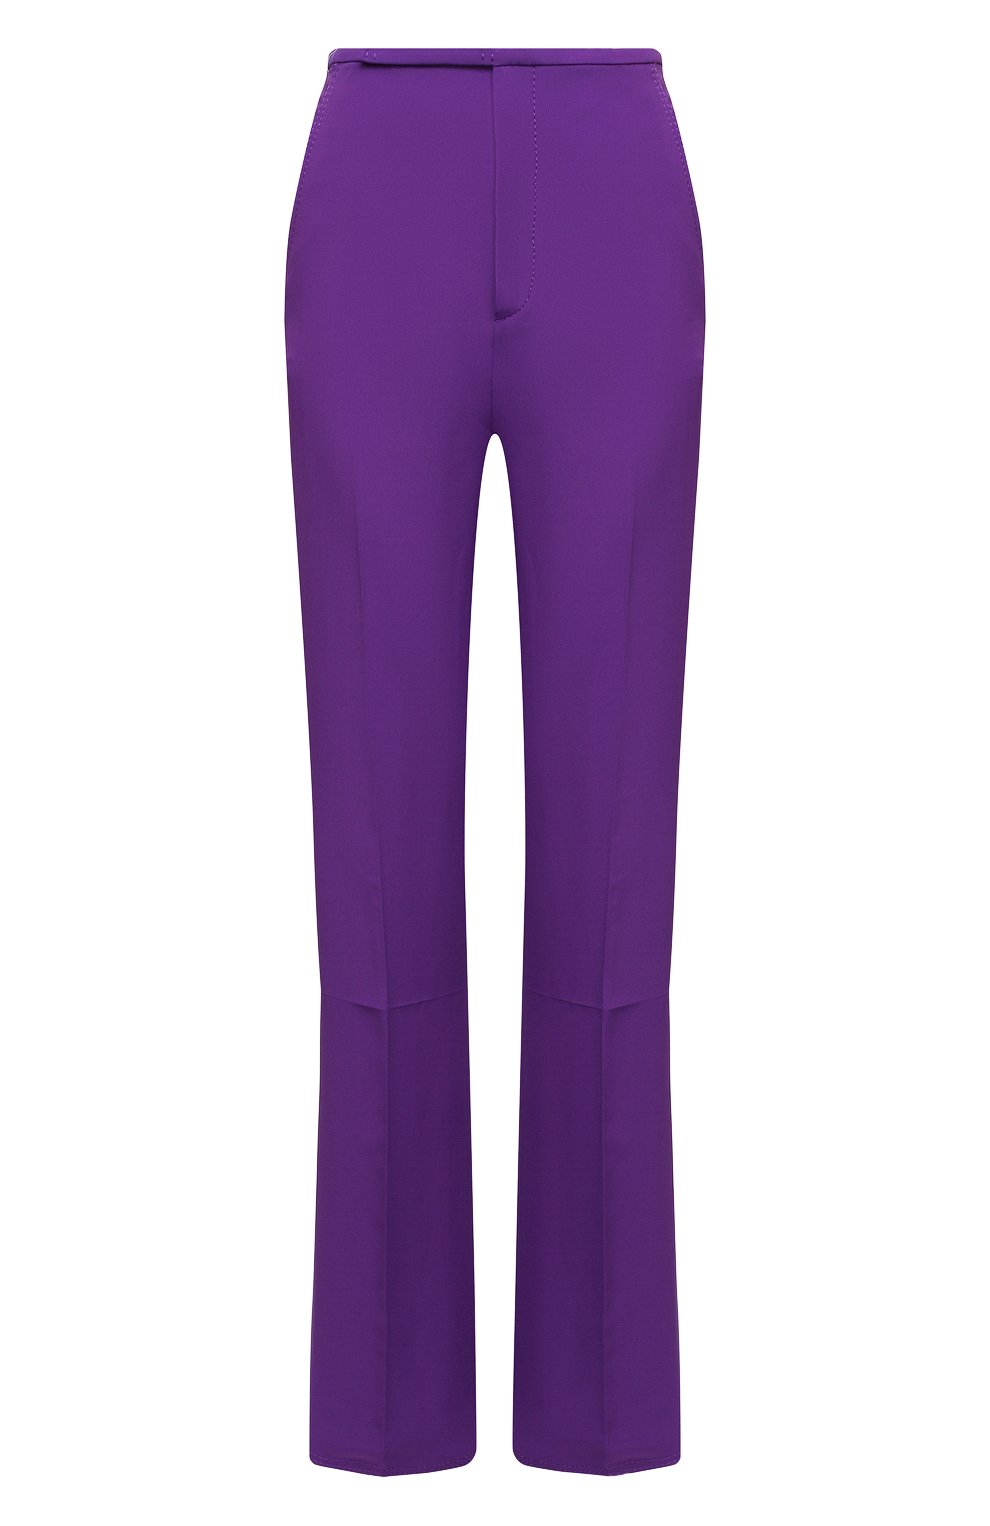 Женские фиолетовые брюки N21 купить в интернет-магазине ЦУМ, арт. 21E N2S0/B021/5111